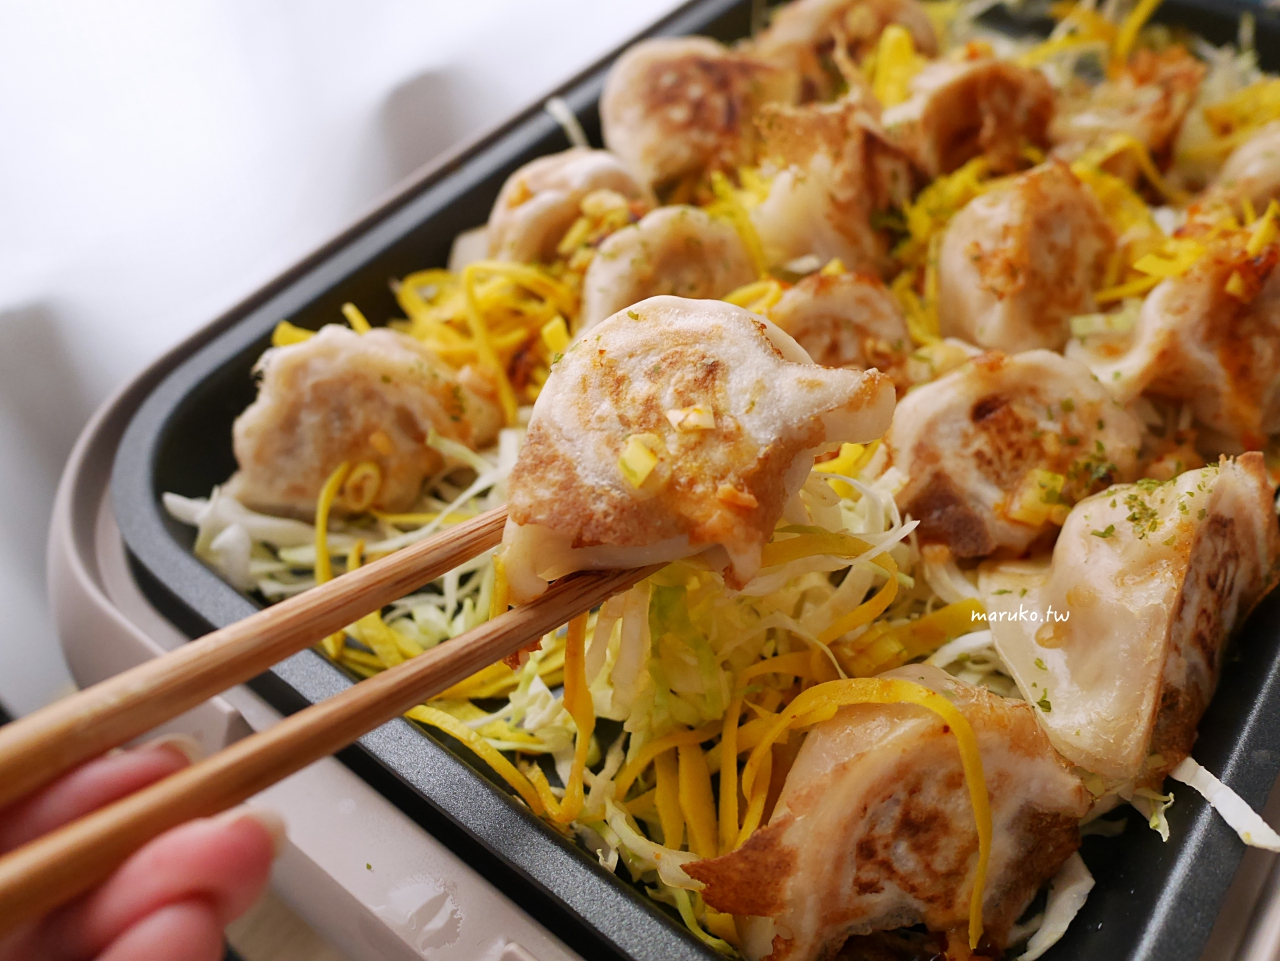 【食譜】日式煎餃 讓水餃更酥脆的居酒屋日式煎餃做法 @Maruko與美食有個約會